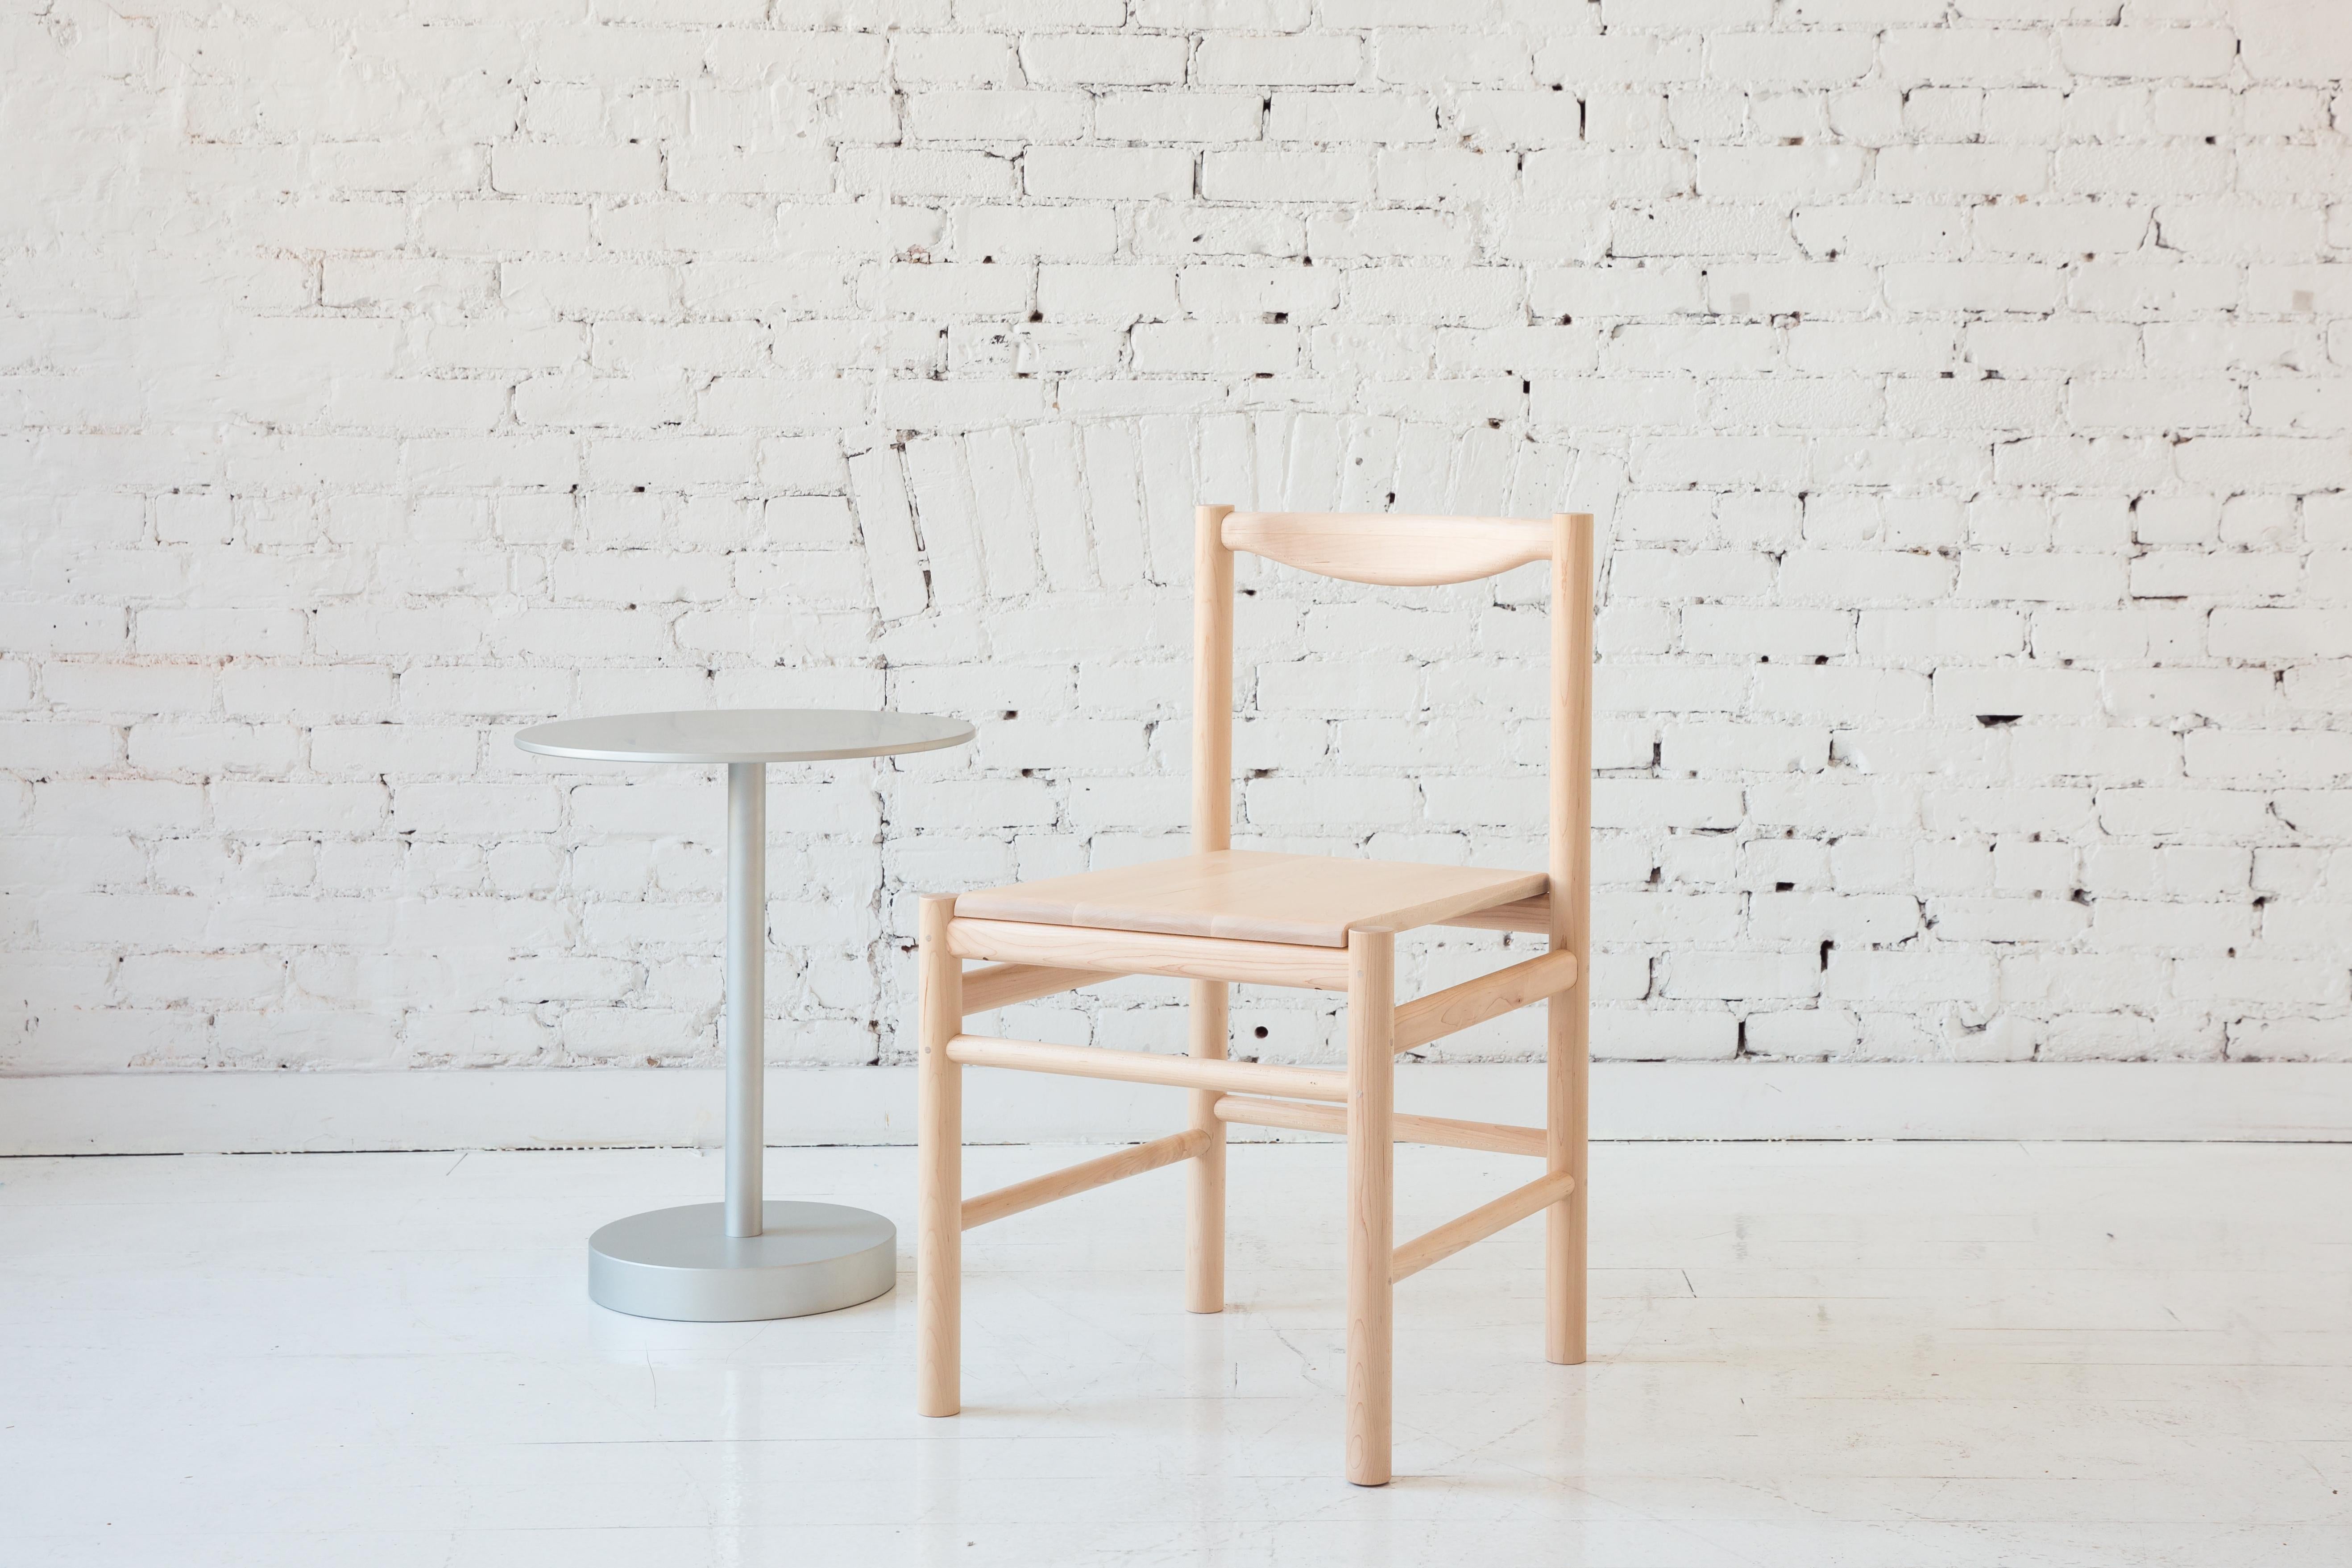 Beistellstuhl aus Holz im Shaker-Stil mit bequemer, konturierter Rückenlehne. Wahlweise mit einer einfachen Holzsitzschale oder einer Sitzschale mit einem flachen Leder- oder Shearling-Polster. Die Schlichtheit dieses Stuhls macht ihn vielseitig